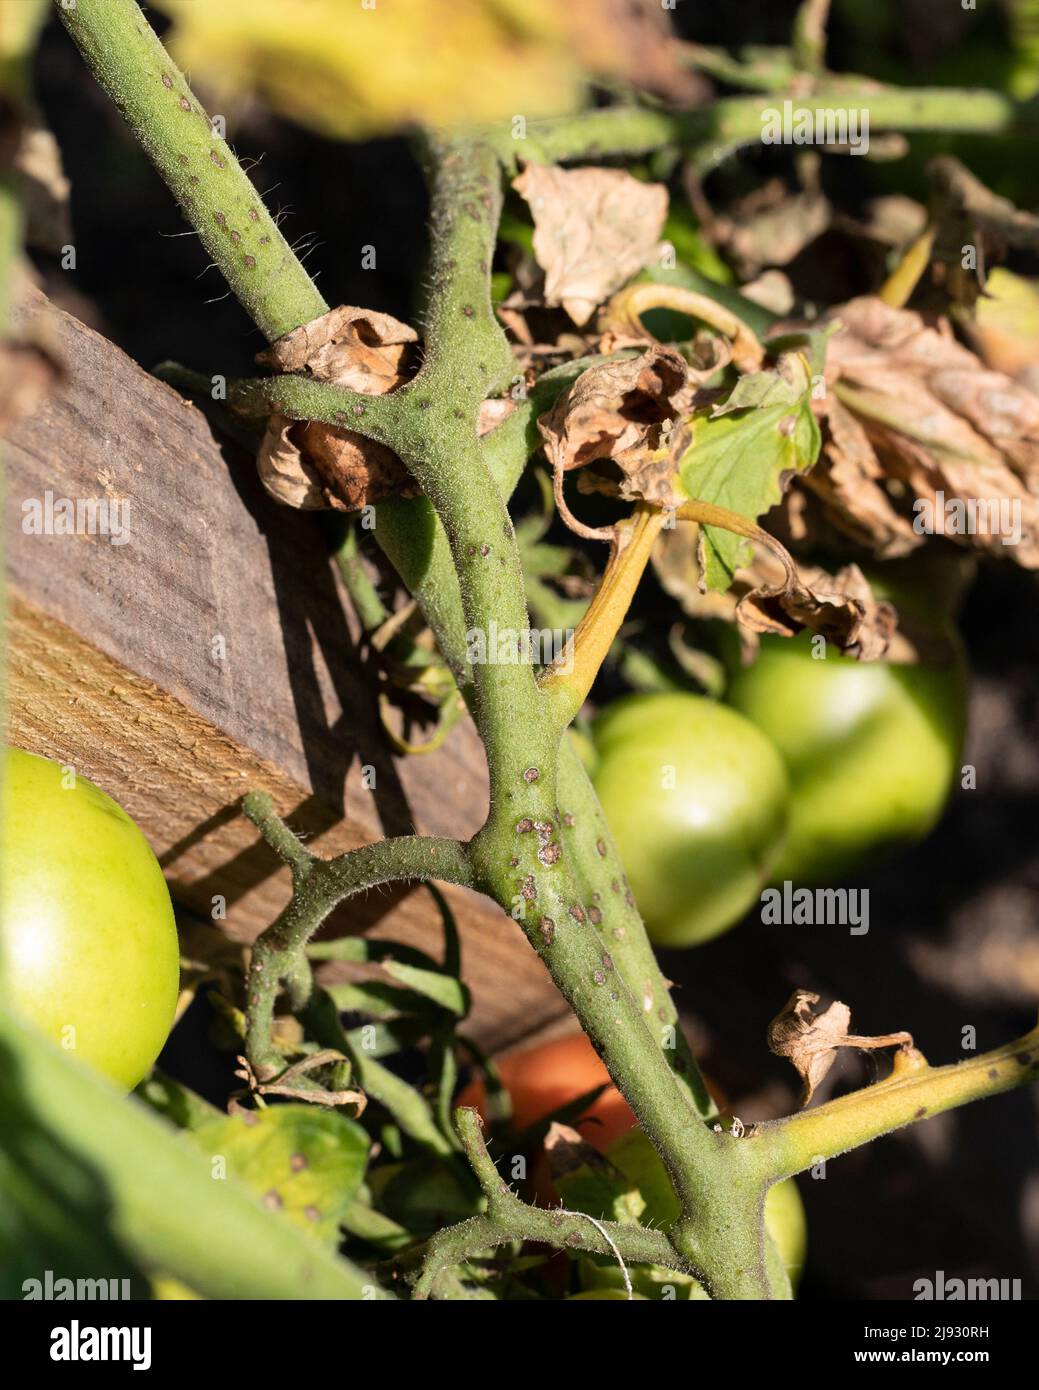 Tomatenpflanzen Blätter und Stängel, die mit dem späten Blight-Erreger Phytophthora infestans infiziert sind. Stockfoto